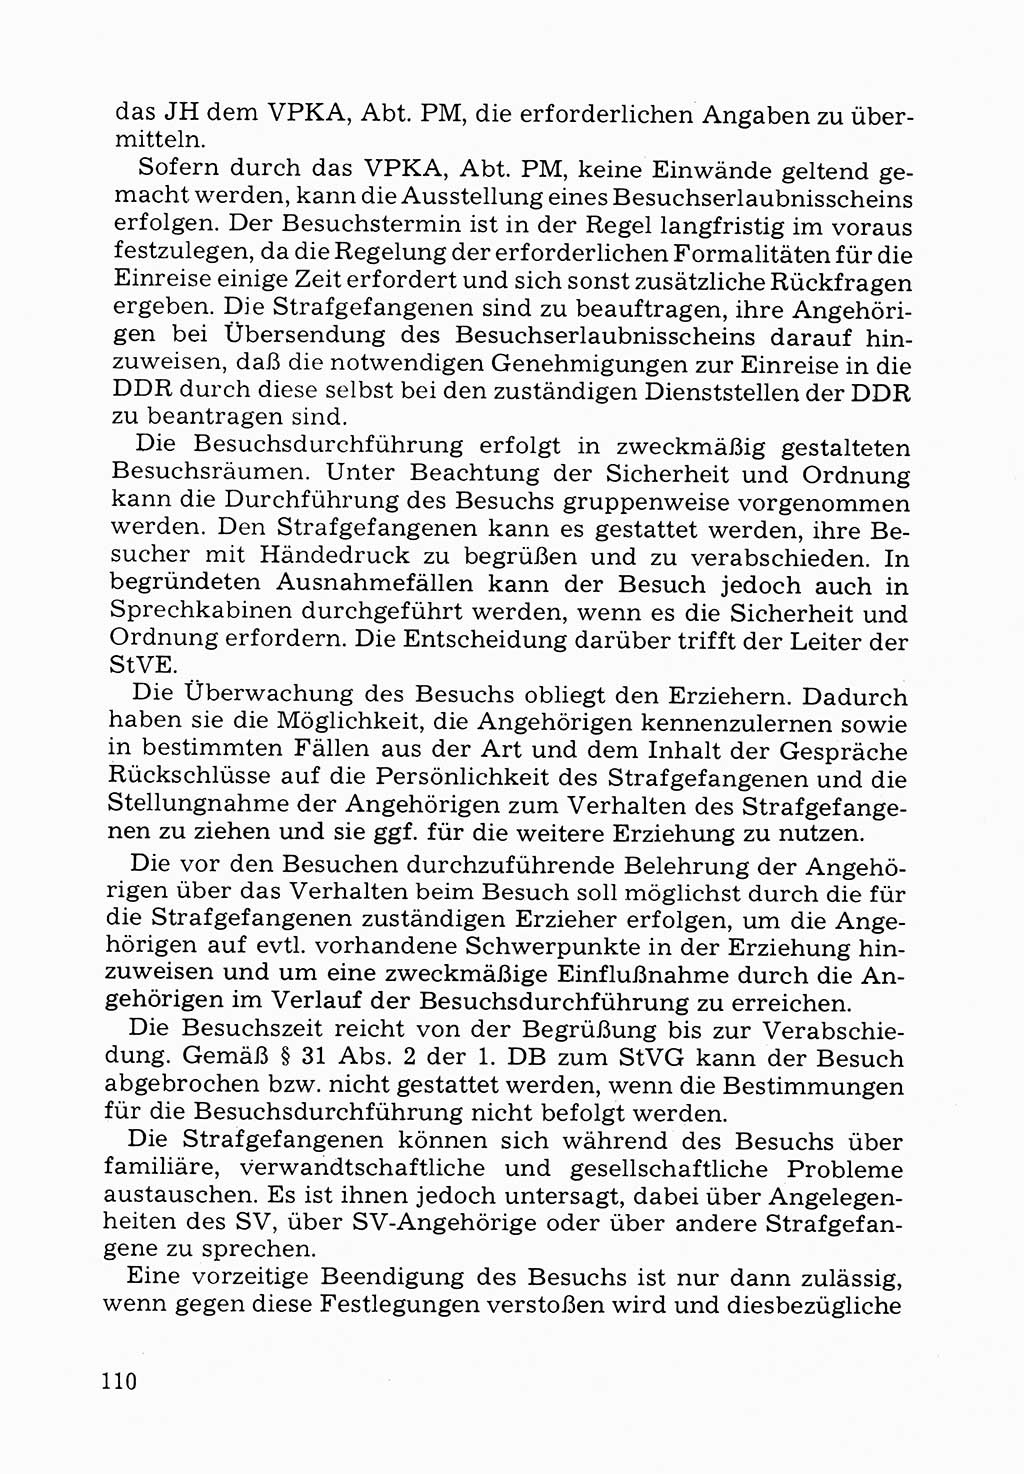 Verwaltungsmäßige Aufgaben beim Vollzug der Untersuchungshaft (U-Haft) sowie der Strafen mit Freiheitsentzug (SV) [Deutsche Demokratische Republik (DDR)] 1980, Seite 110 (Aufg. Vollz. U-Haft SV DDR 1980, S. 110)